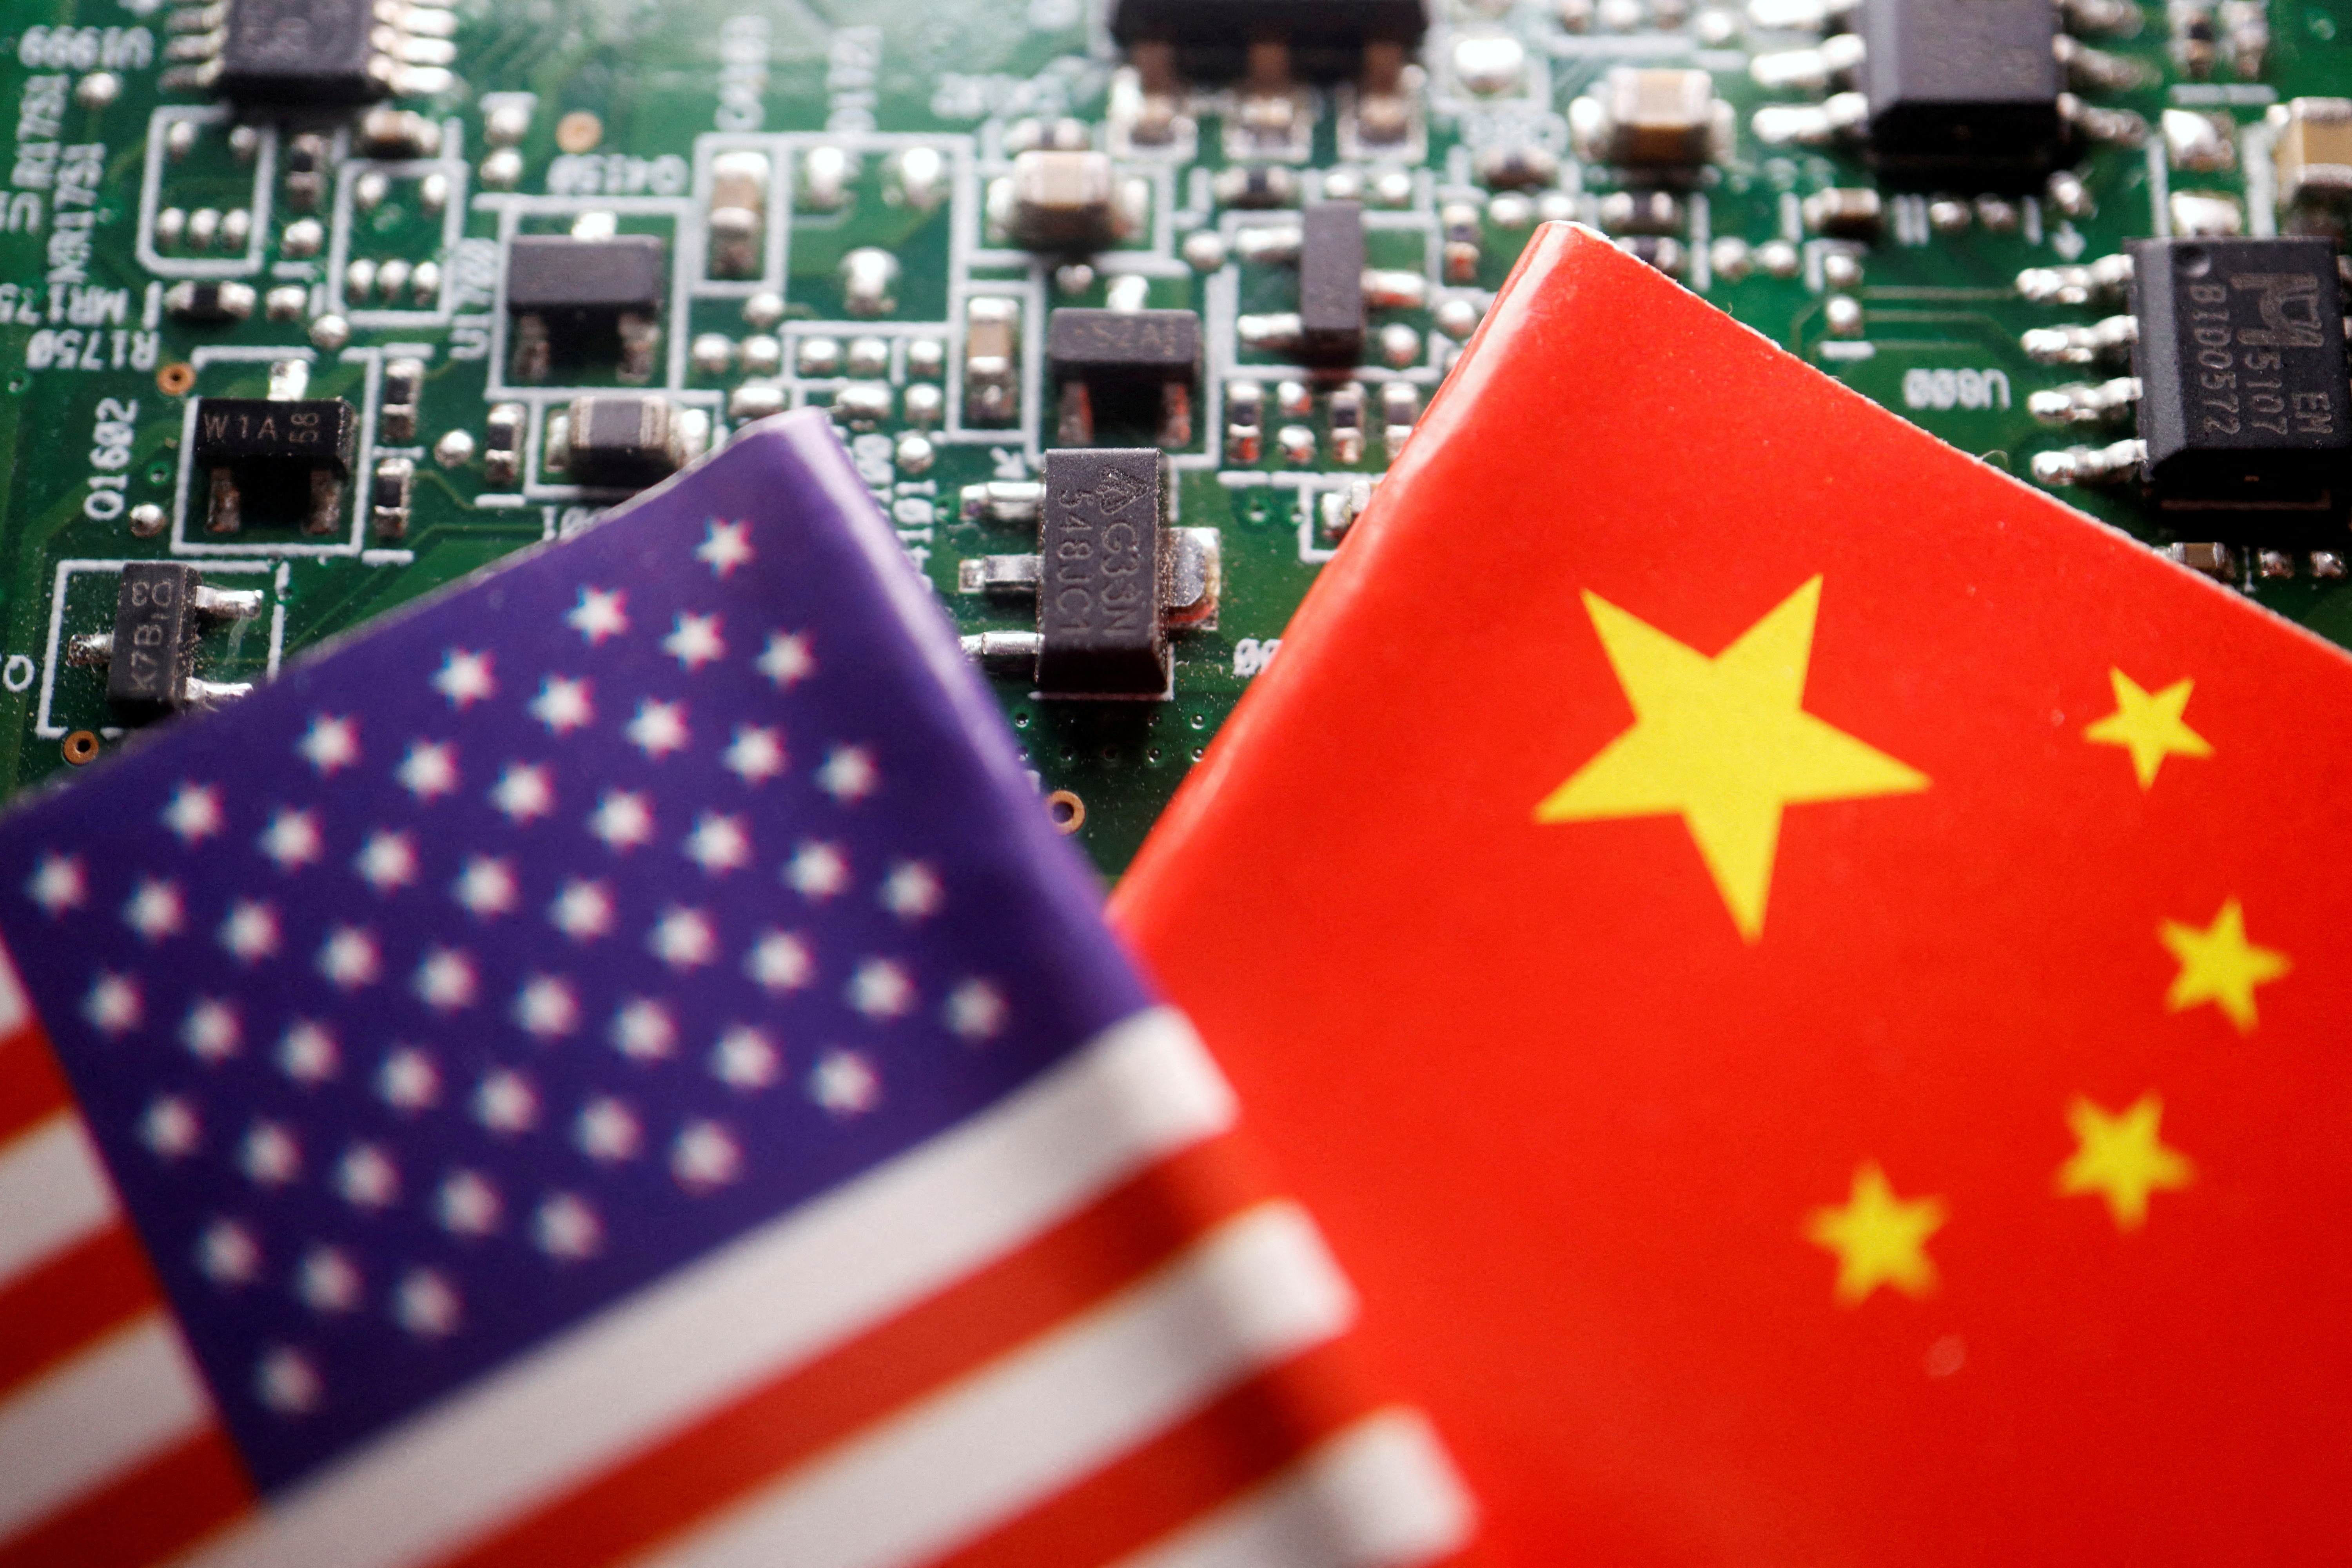 Hình ảnh minh họa cờ Trung Quốc và Mỹ kèm chip bán dẫn| Tân Thế Kỷ| TTK NEWS